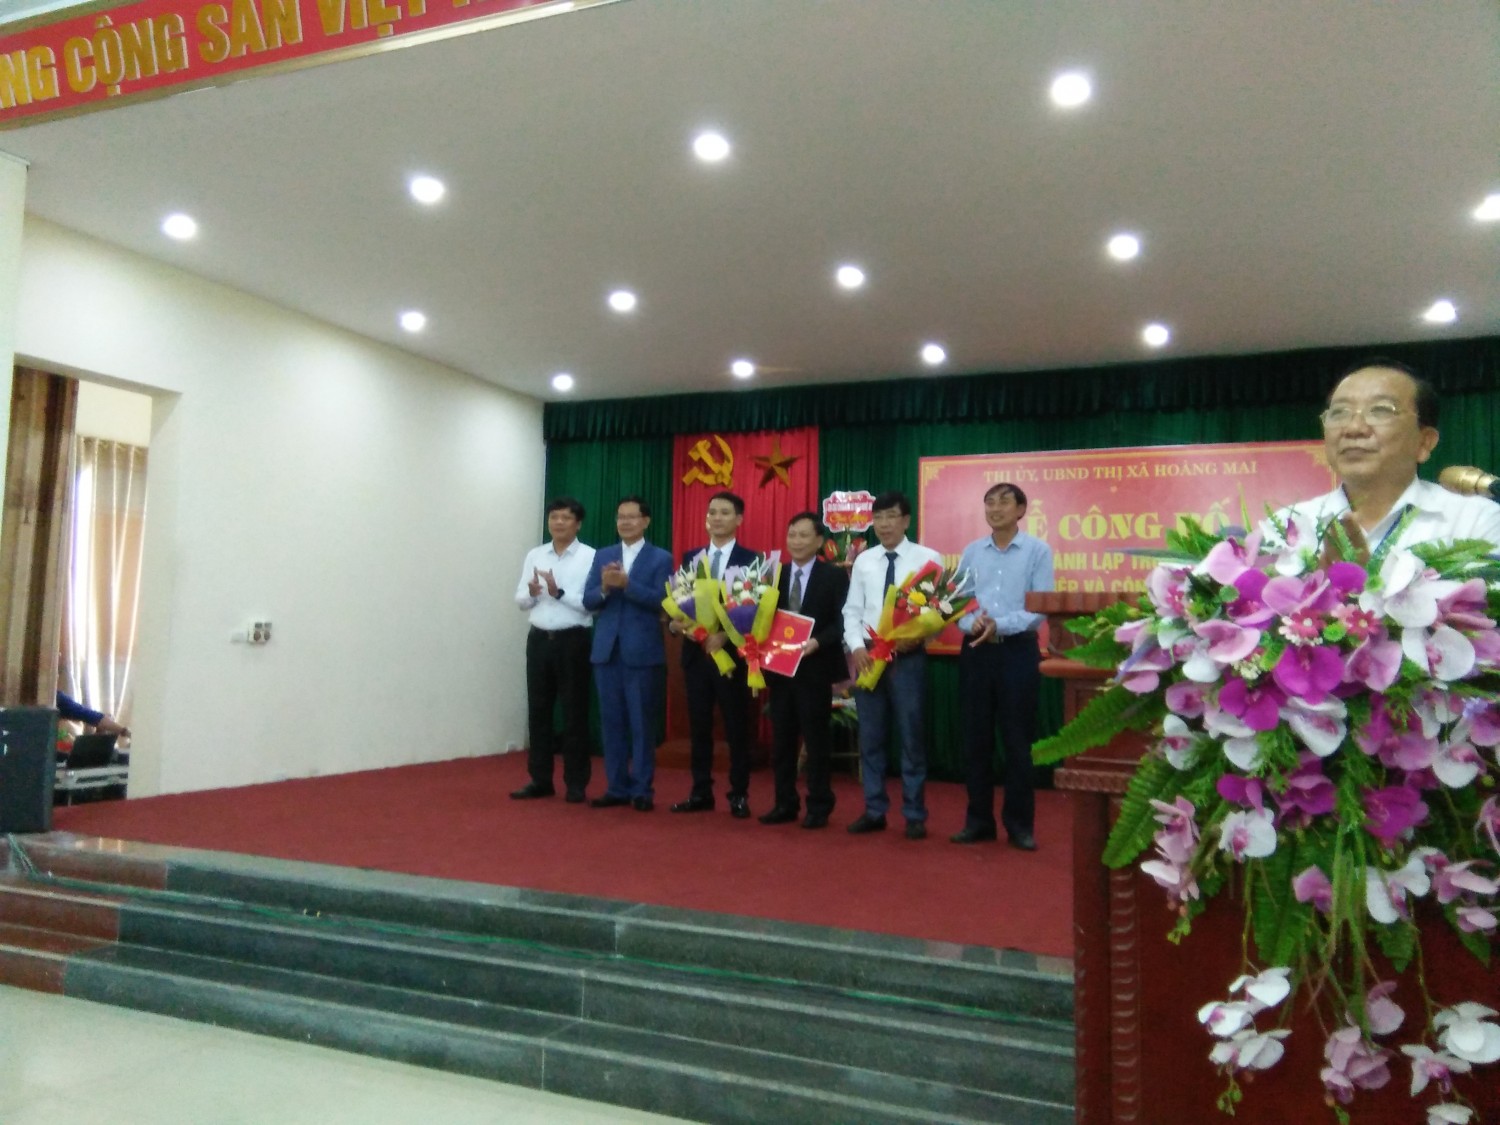 UBND Thị xã Hoàng Mai: Công bố thành lập Trung tâm Dịch vụ nông nghiệp huyện Thị xã Hoàng Mai